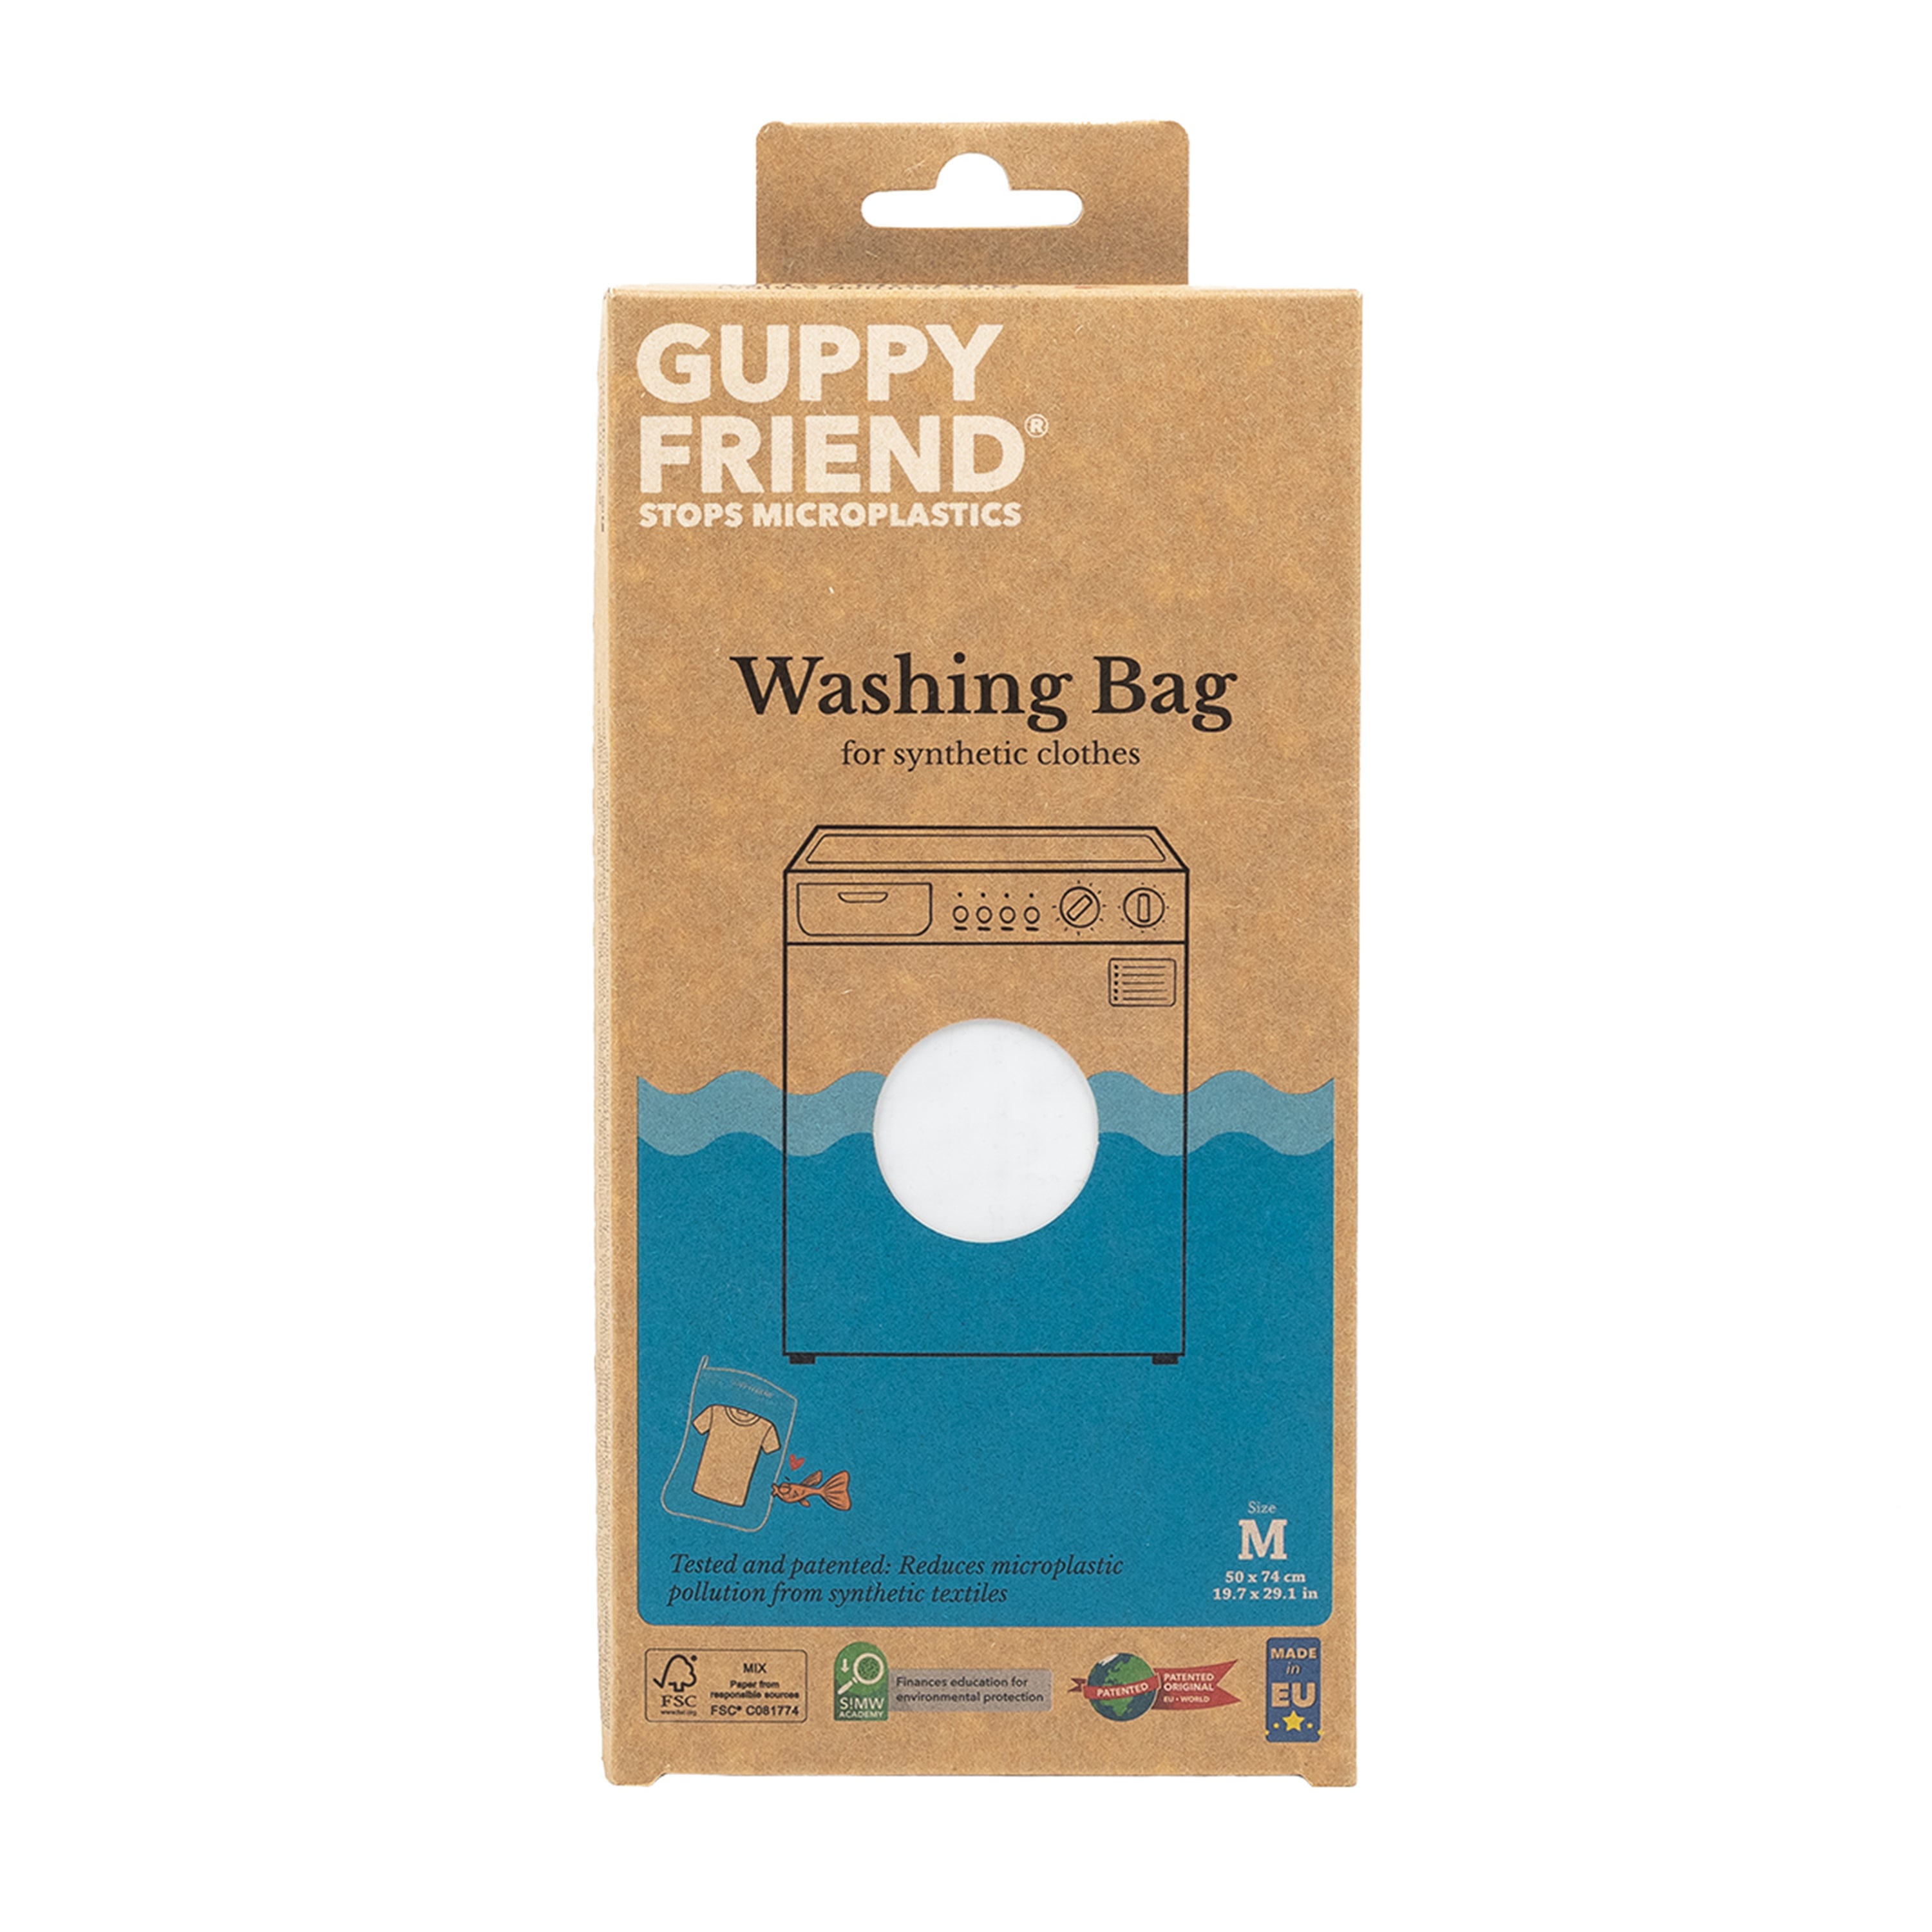 GUPPYFRIEND Washing Bag – Hem Support Wear